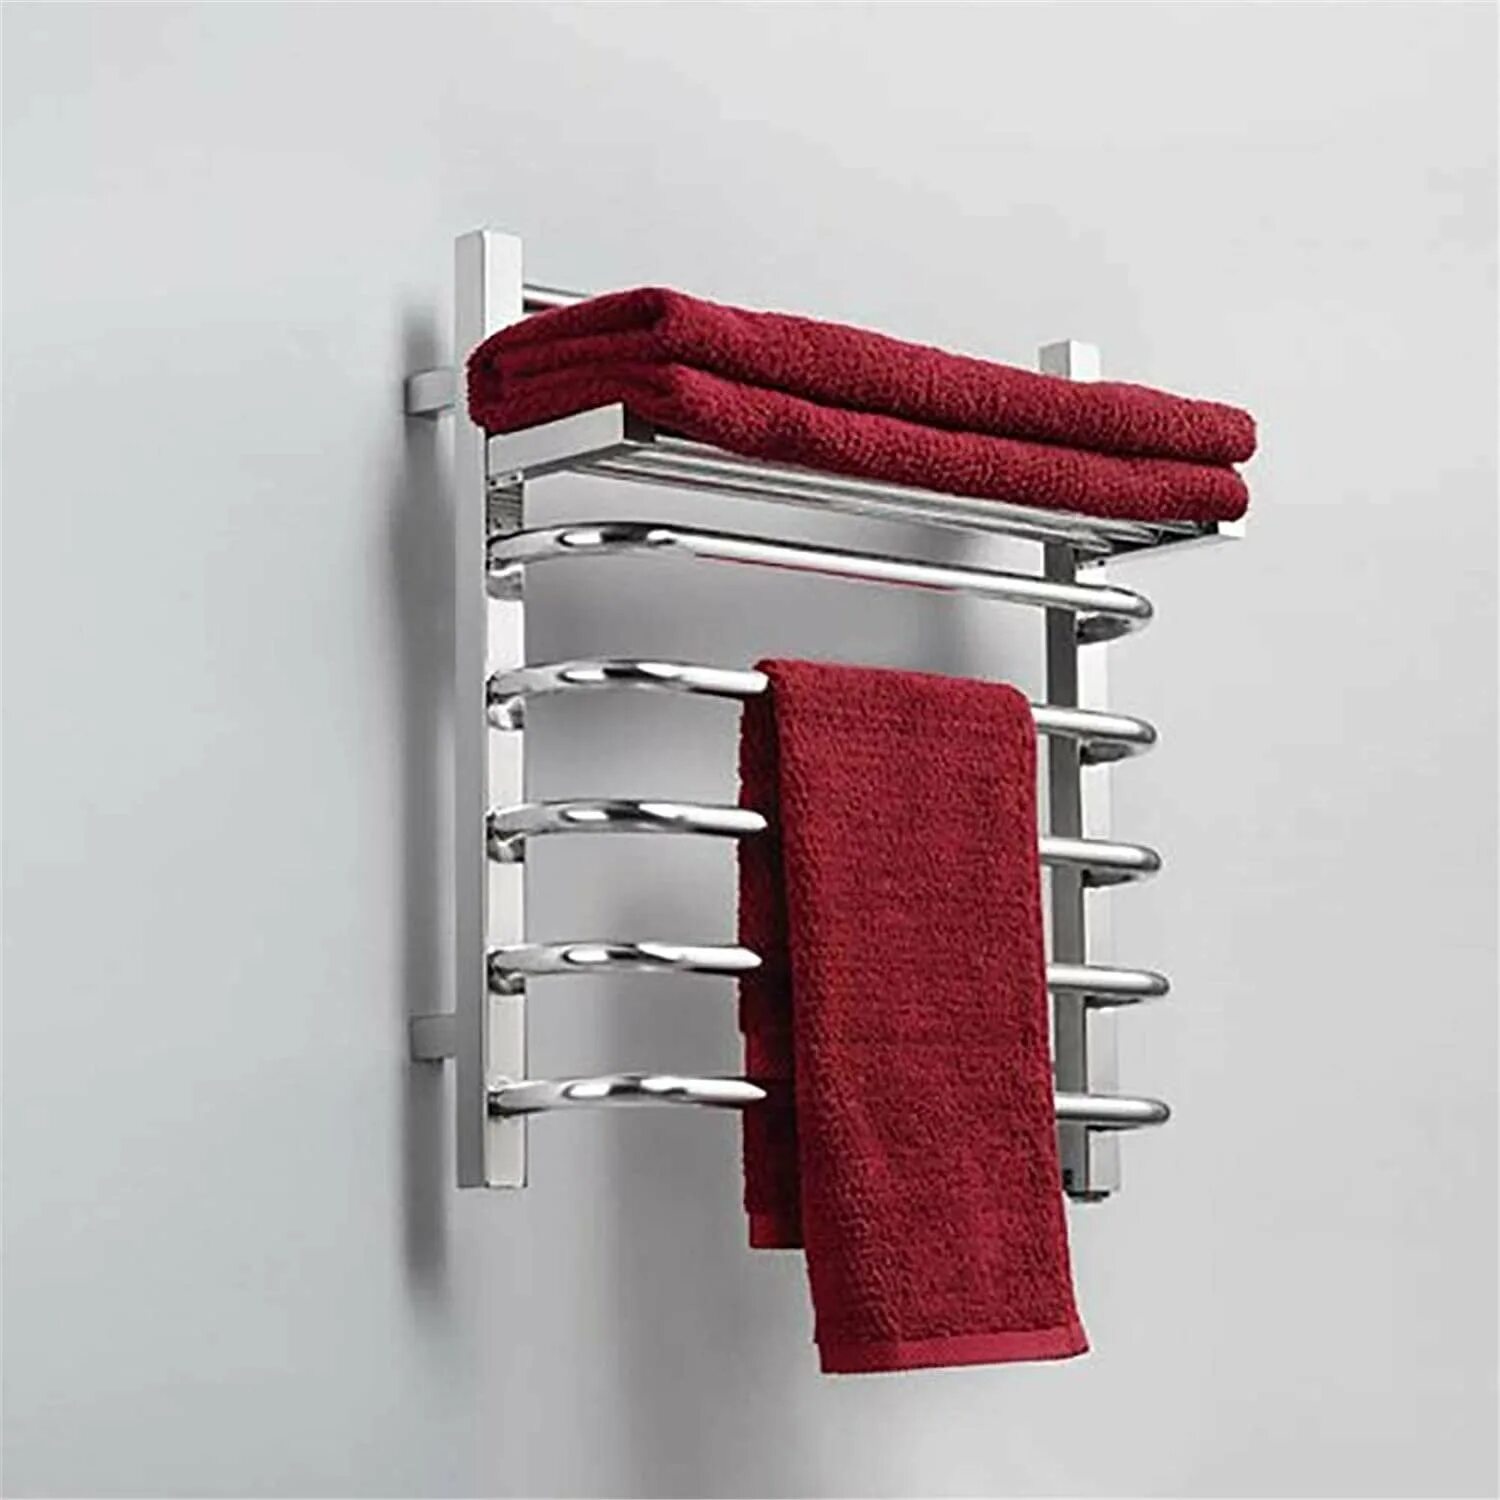 Сушилка для полотенец электрическая. Сушилка Towel Warmer. Сушилка для белья Stainless Steel Towel Rack. Полотенца сушители 50/80. Сушилка для полотенец в ванную.